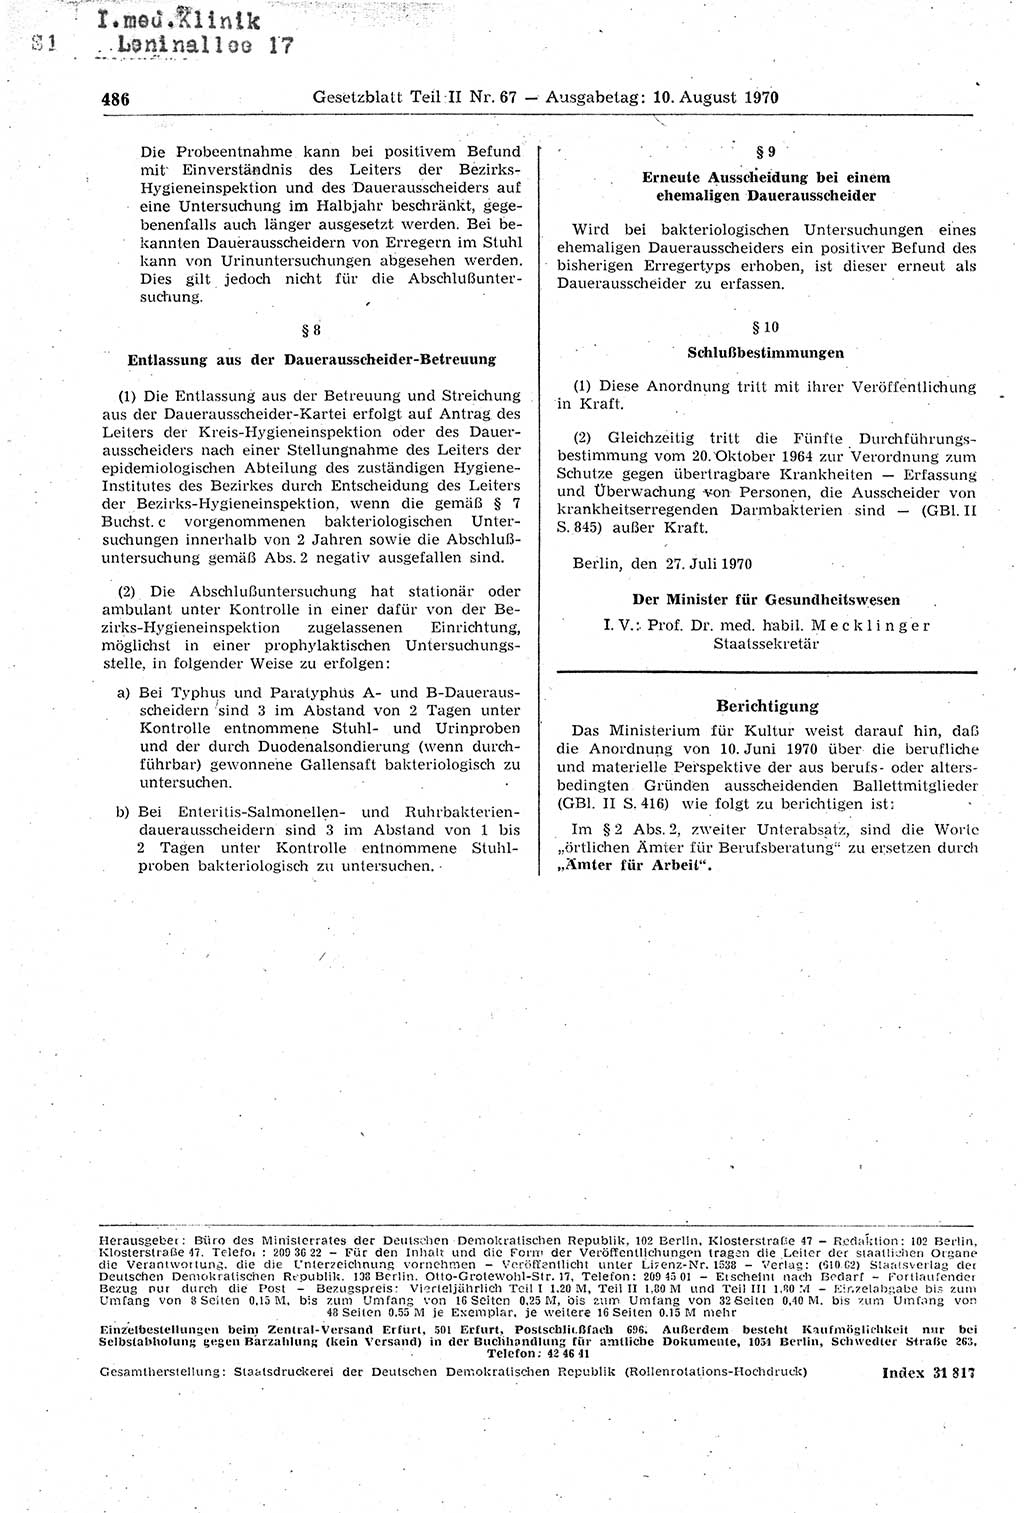 Gesetzblatt (GBl.) der Deutschen Demokratischen Republik (DDR) Teil ⅠⅠ 1970, Seite 486 (GBl. DDR ⅠⅠ 1970, S. 486)